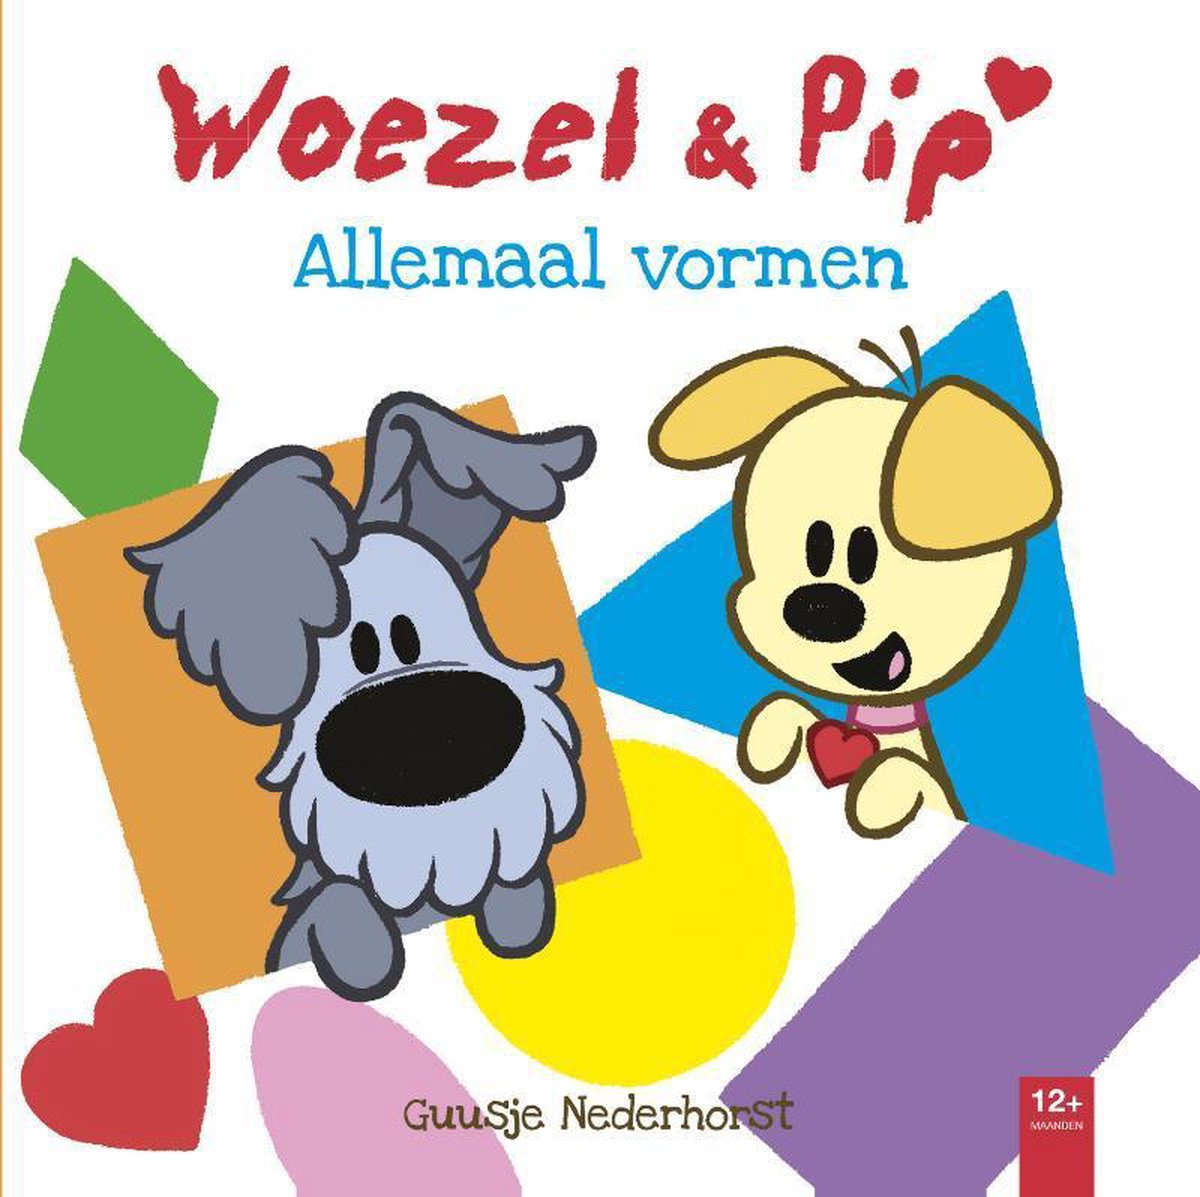 Woezel & - Allemaal vormen, Guusje Nederhorst | 9789025866709 | Boeken | bol.com